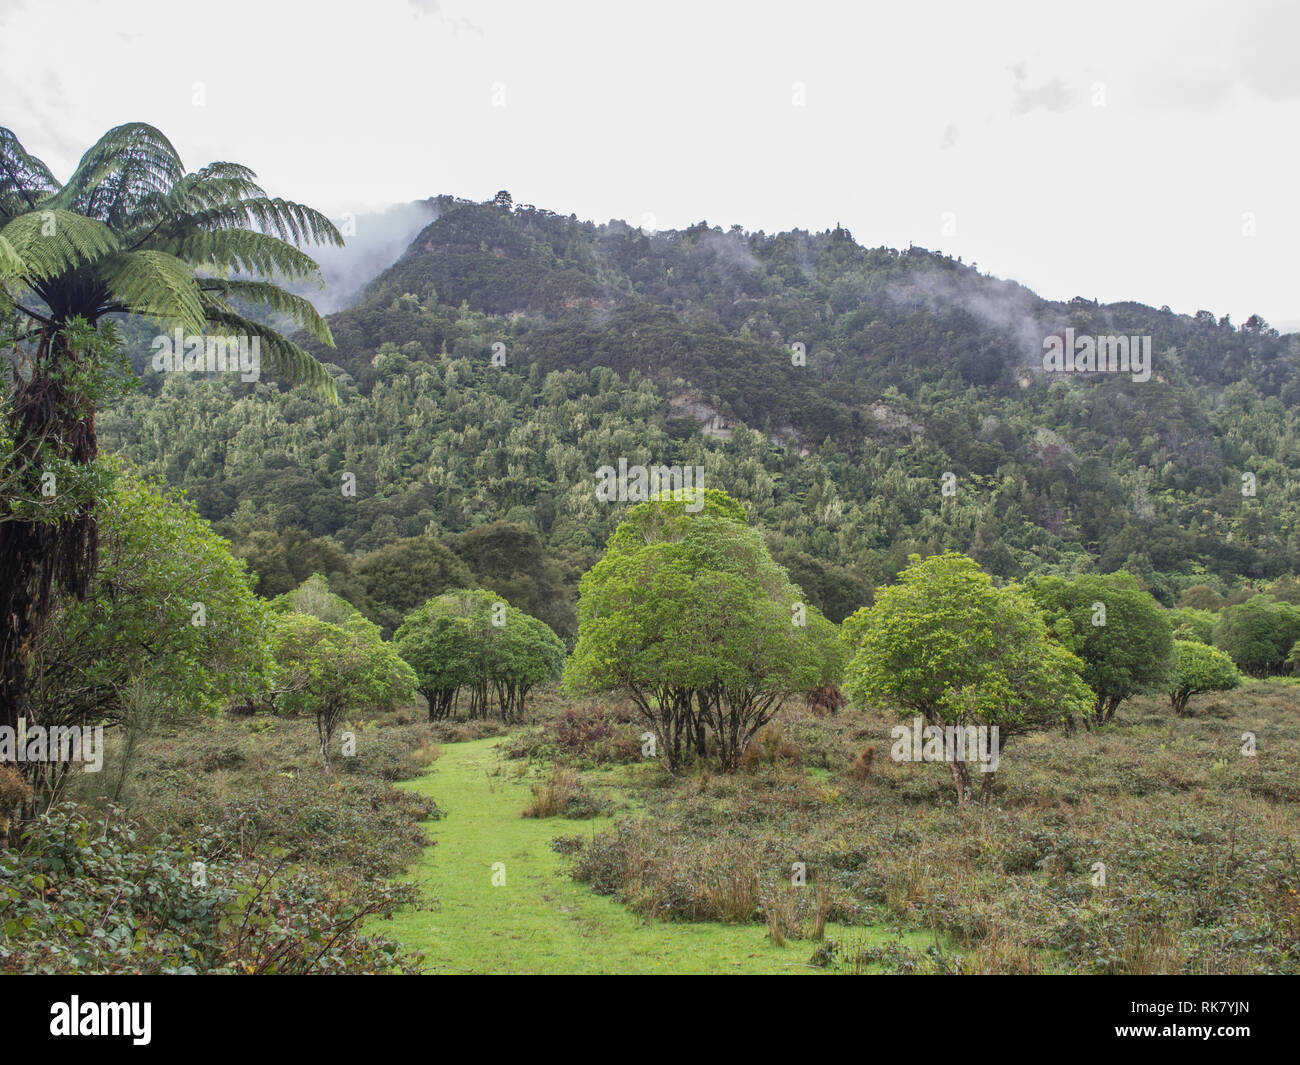 Chemin herbeux à travers la régénération de maquis, mist rising après la pluie, les collines couvertes de forêt native bush, au-delà de la vallée de la rivière Whanganui Ahuahu Nouvelle-zélande Banque D'Images